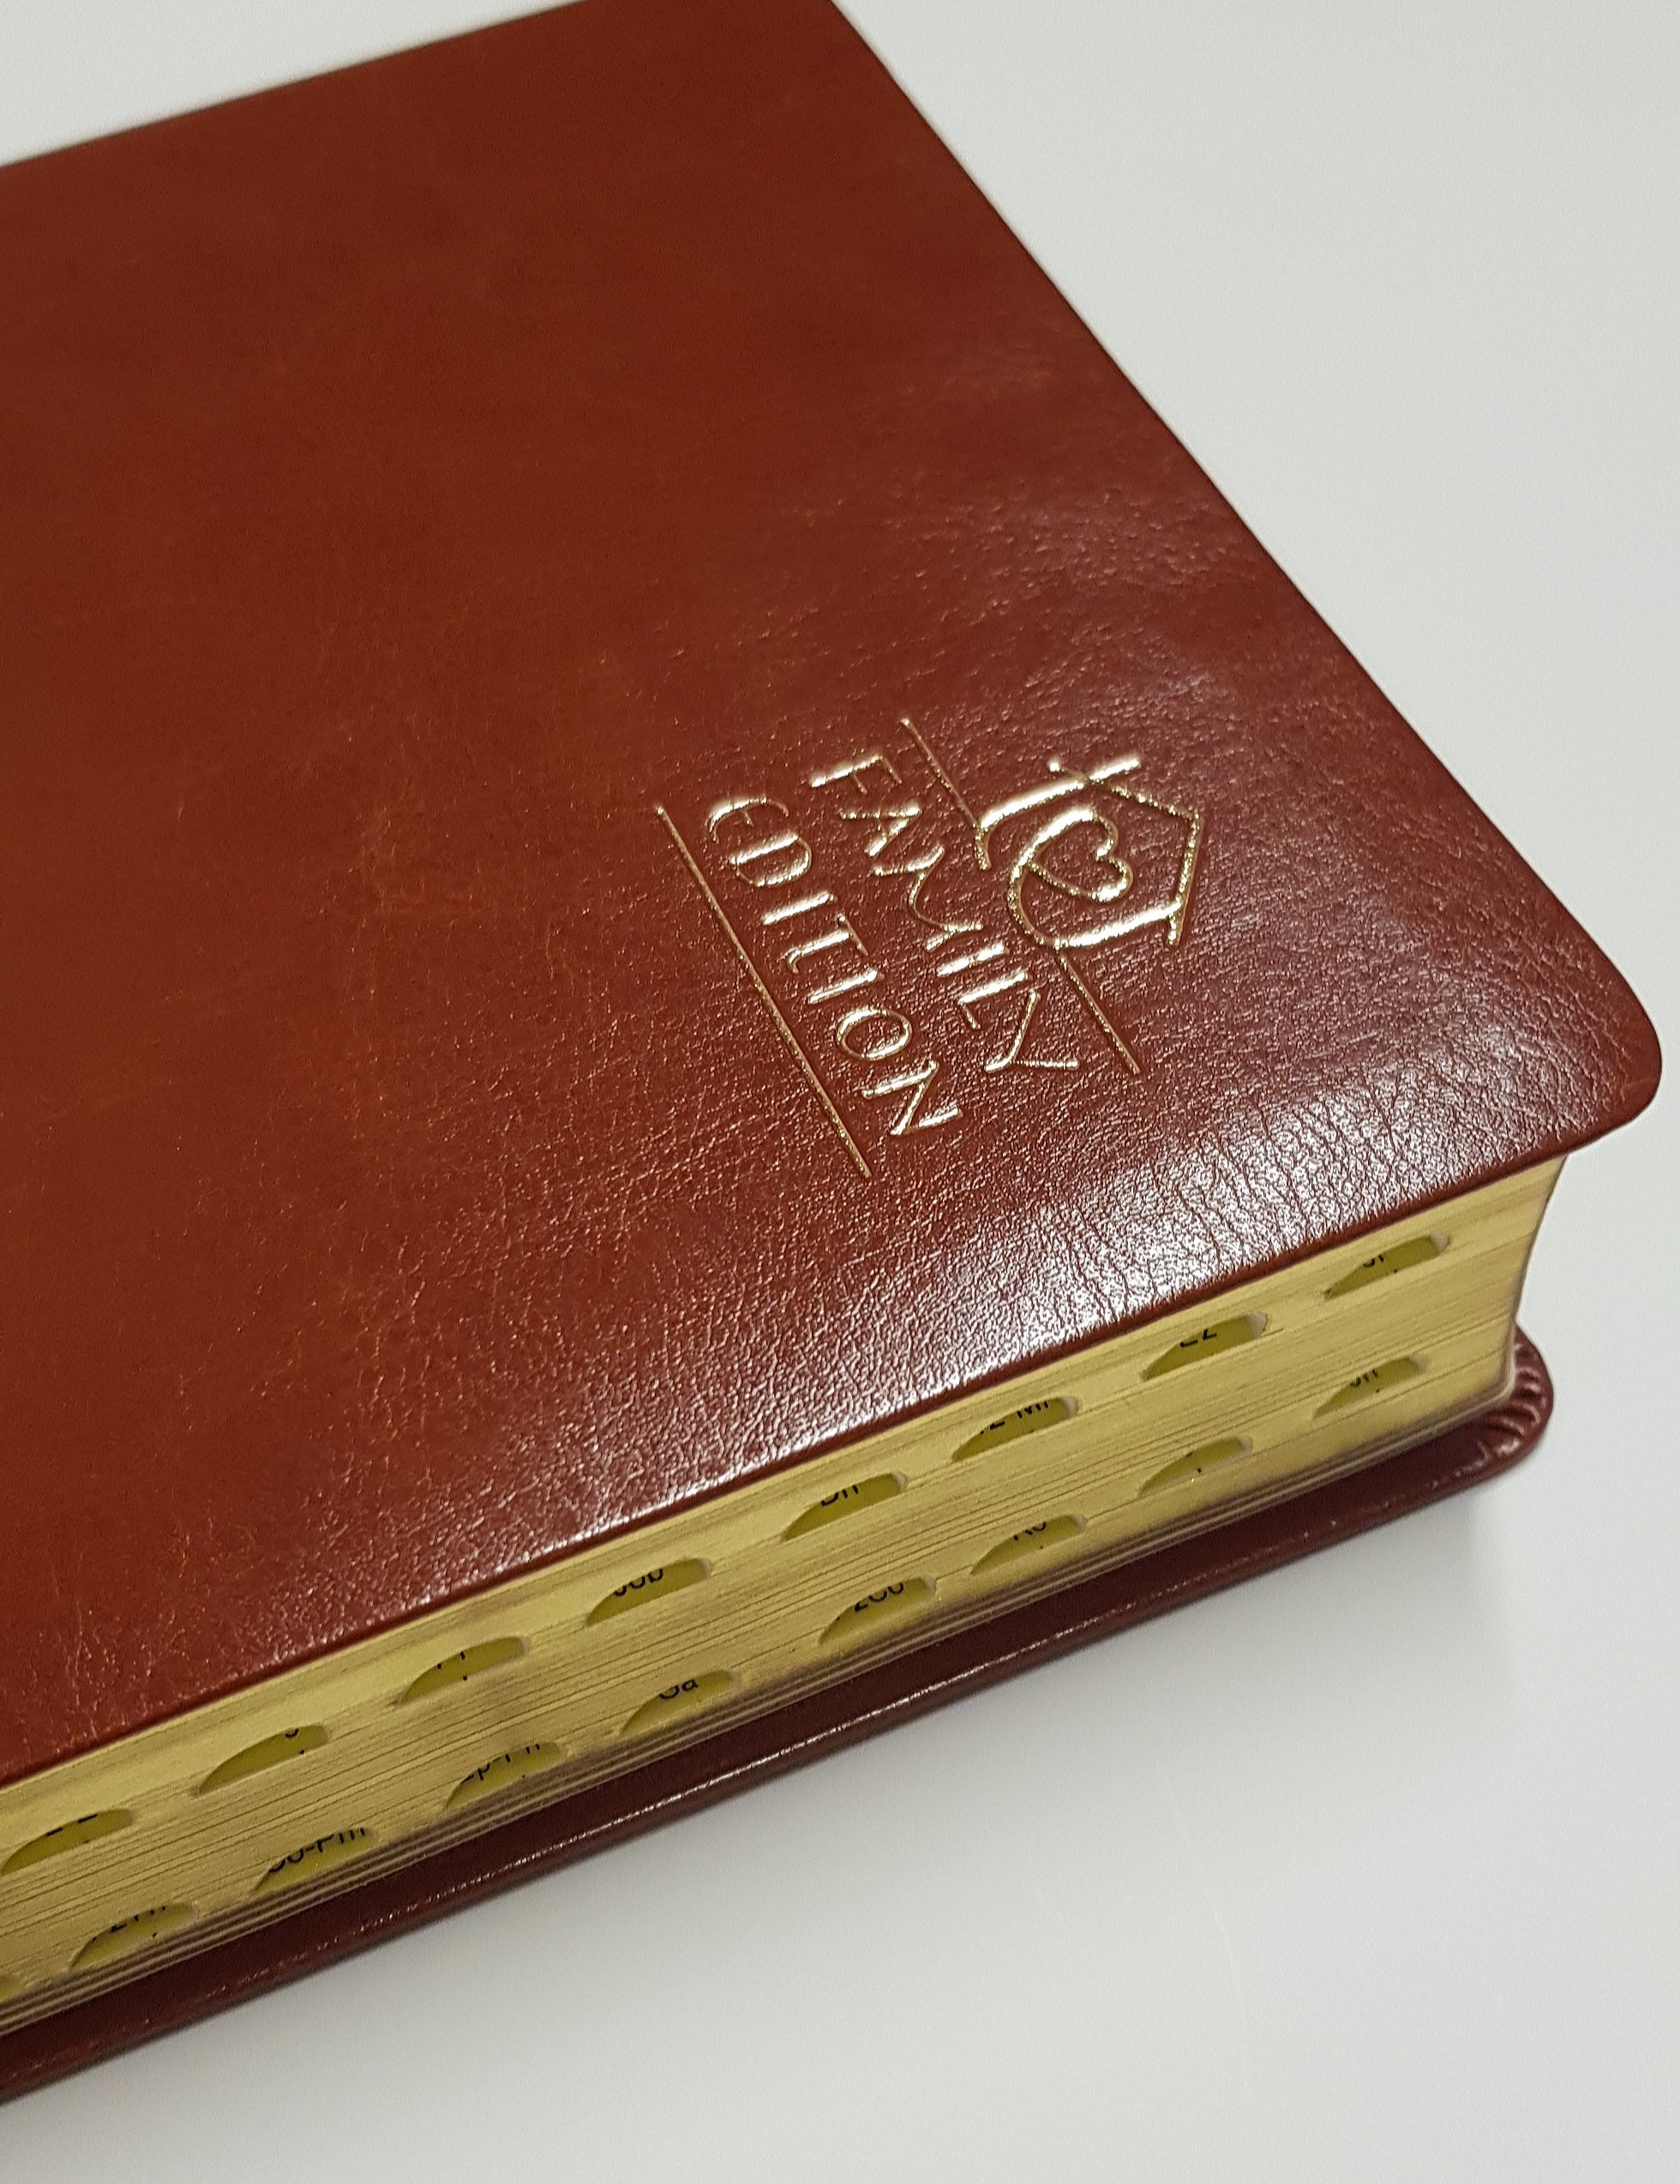 Catholic Christian Community Bible - Family Edition Leather Gilt & Indexed